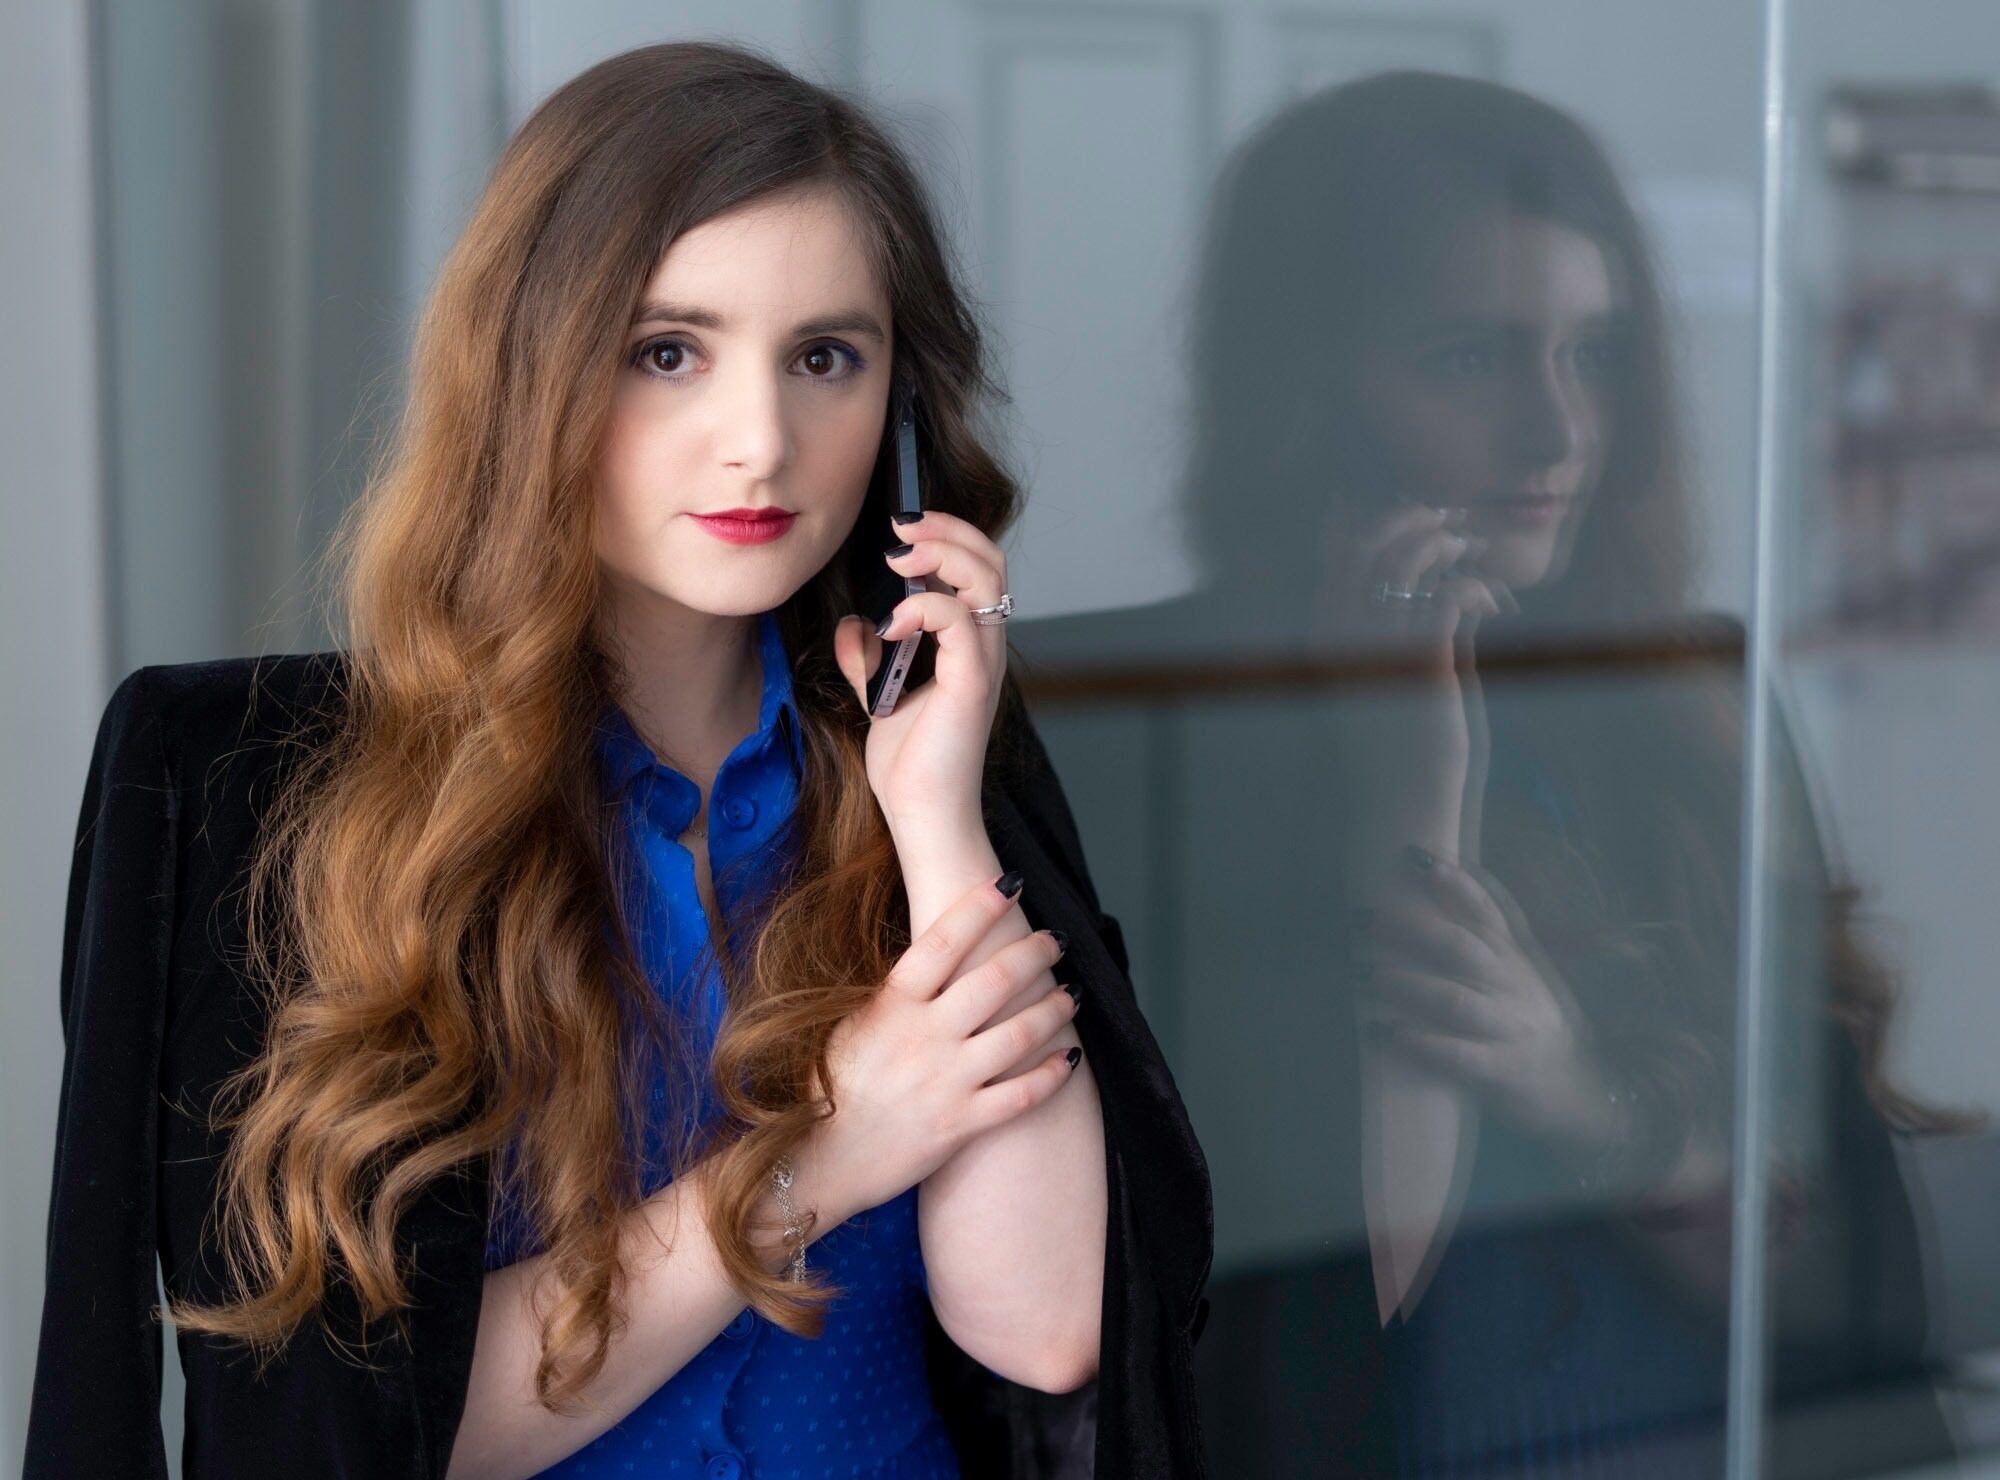 Frau im blauen Kleid und schwarzem Blazer die am Telefon spricht